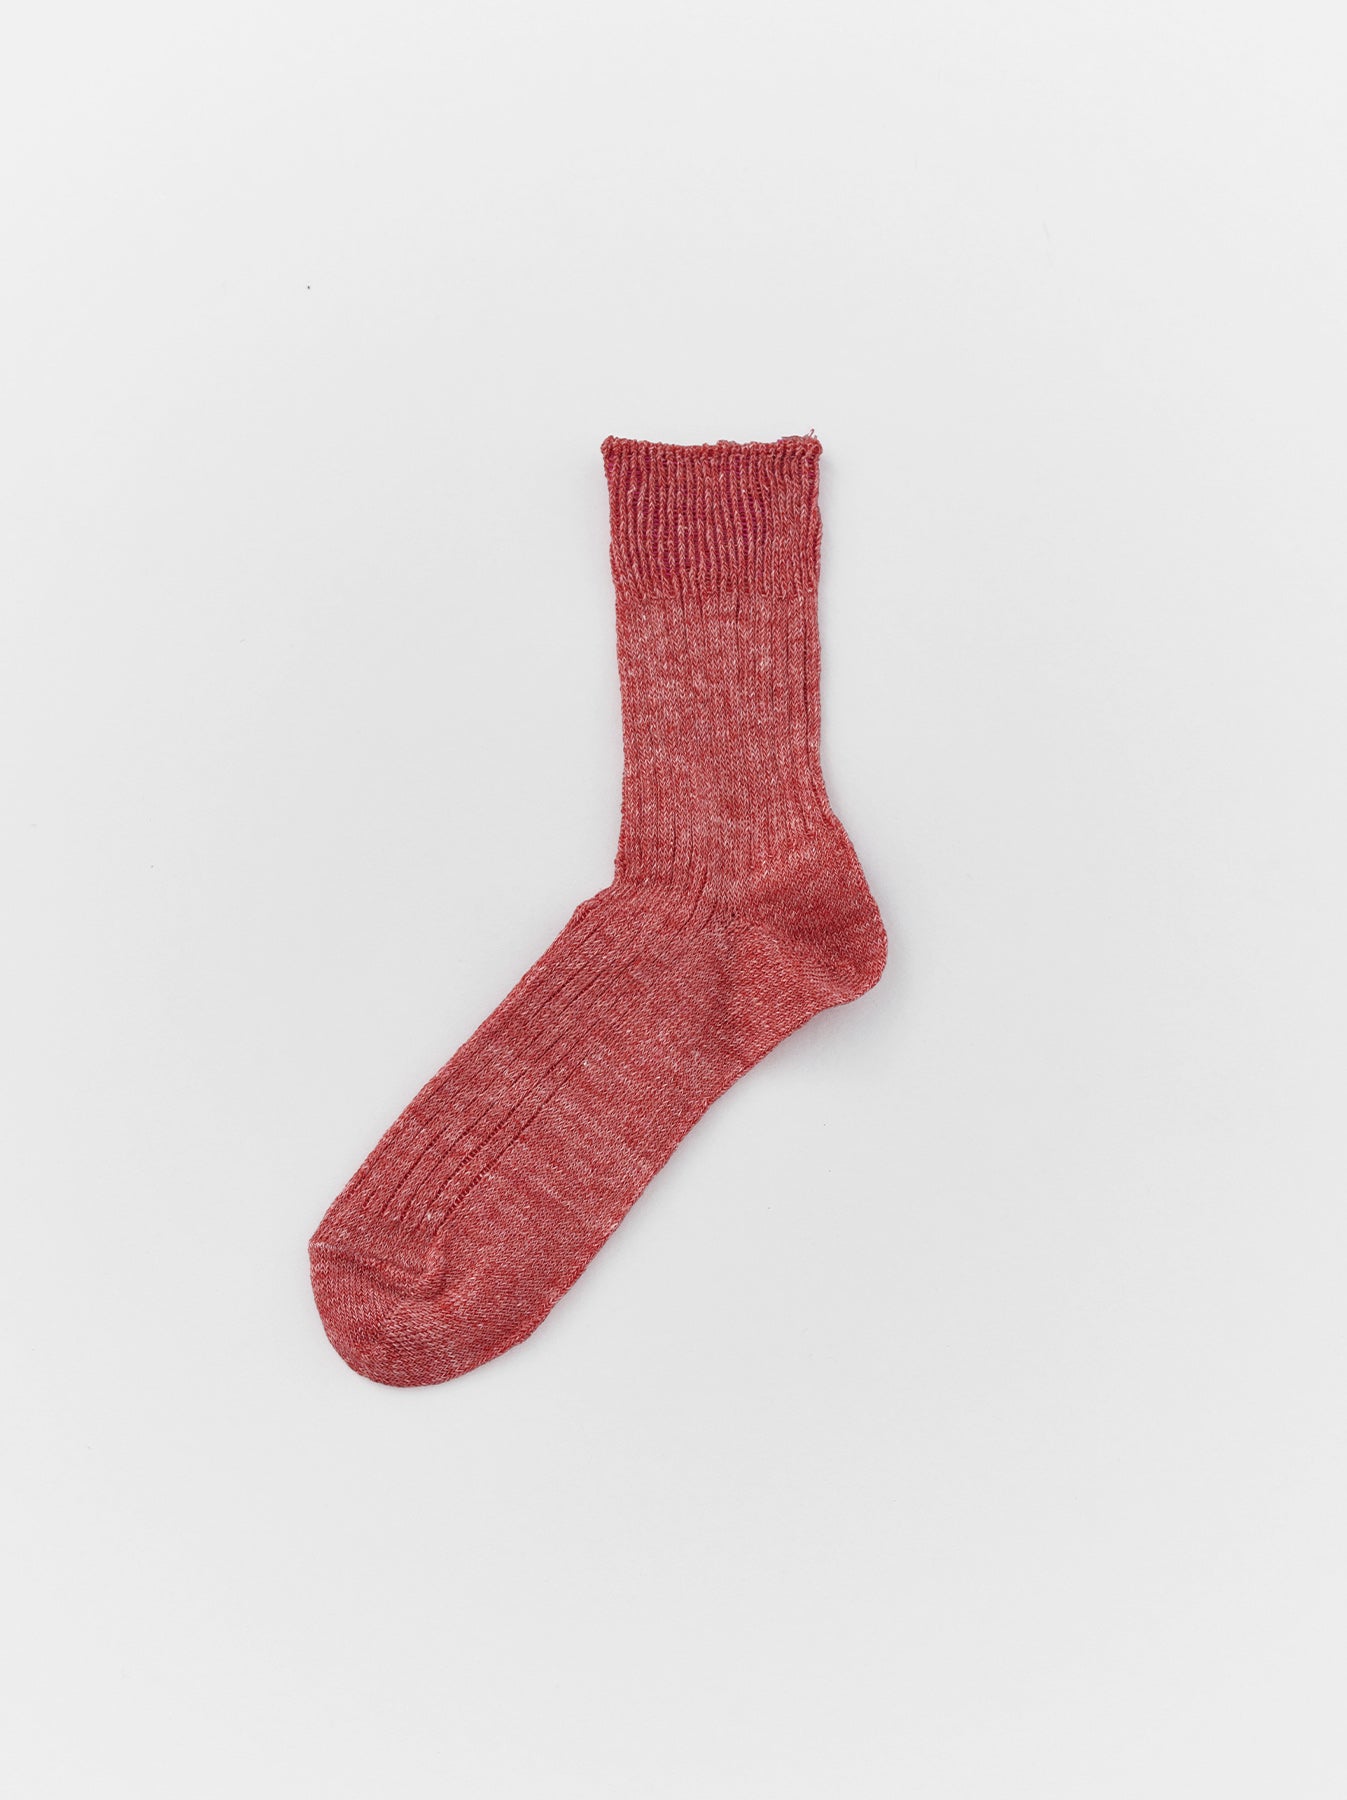 Rib short socks (Women's)